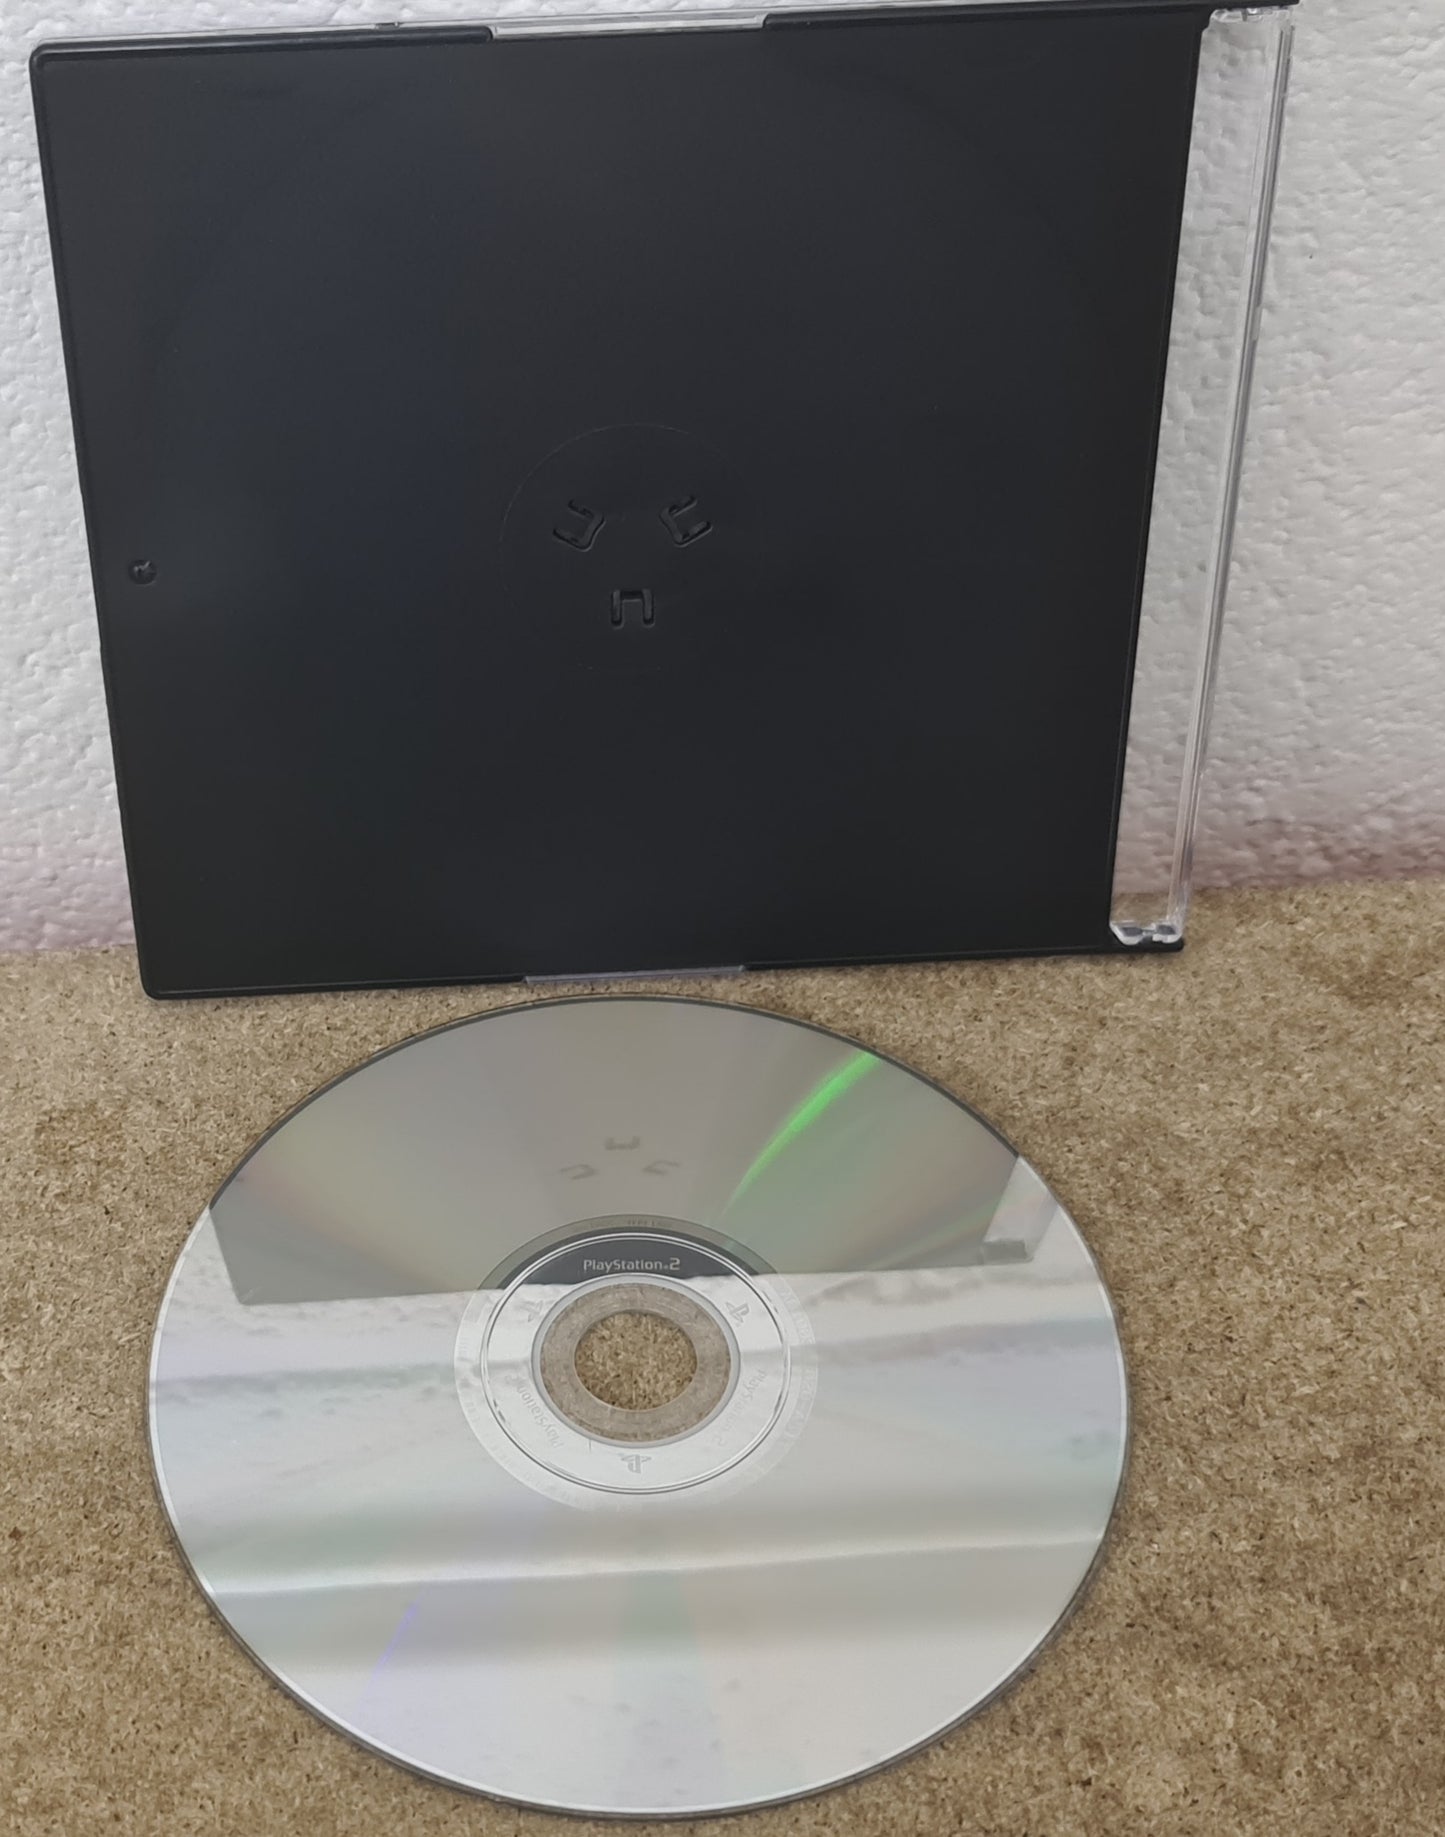 Kuri Kuri Mix Sony Playstation 2 (PS2) Game Disc Only